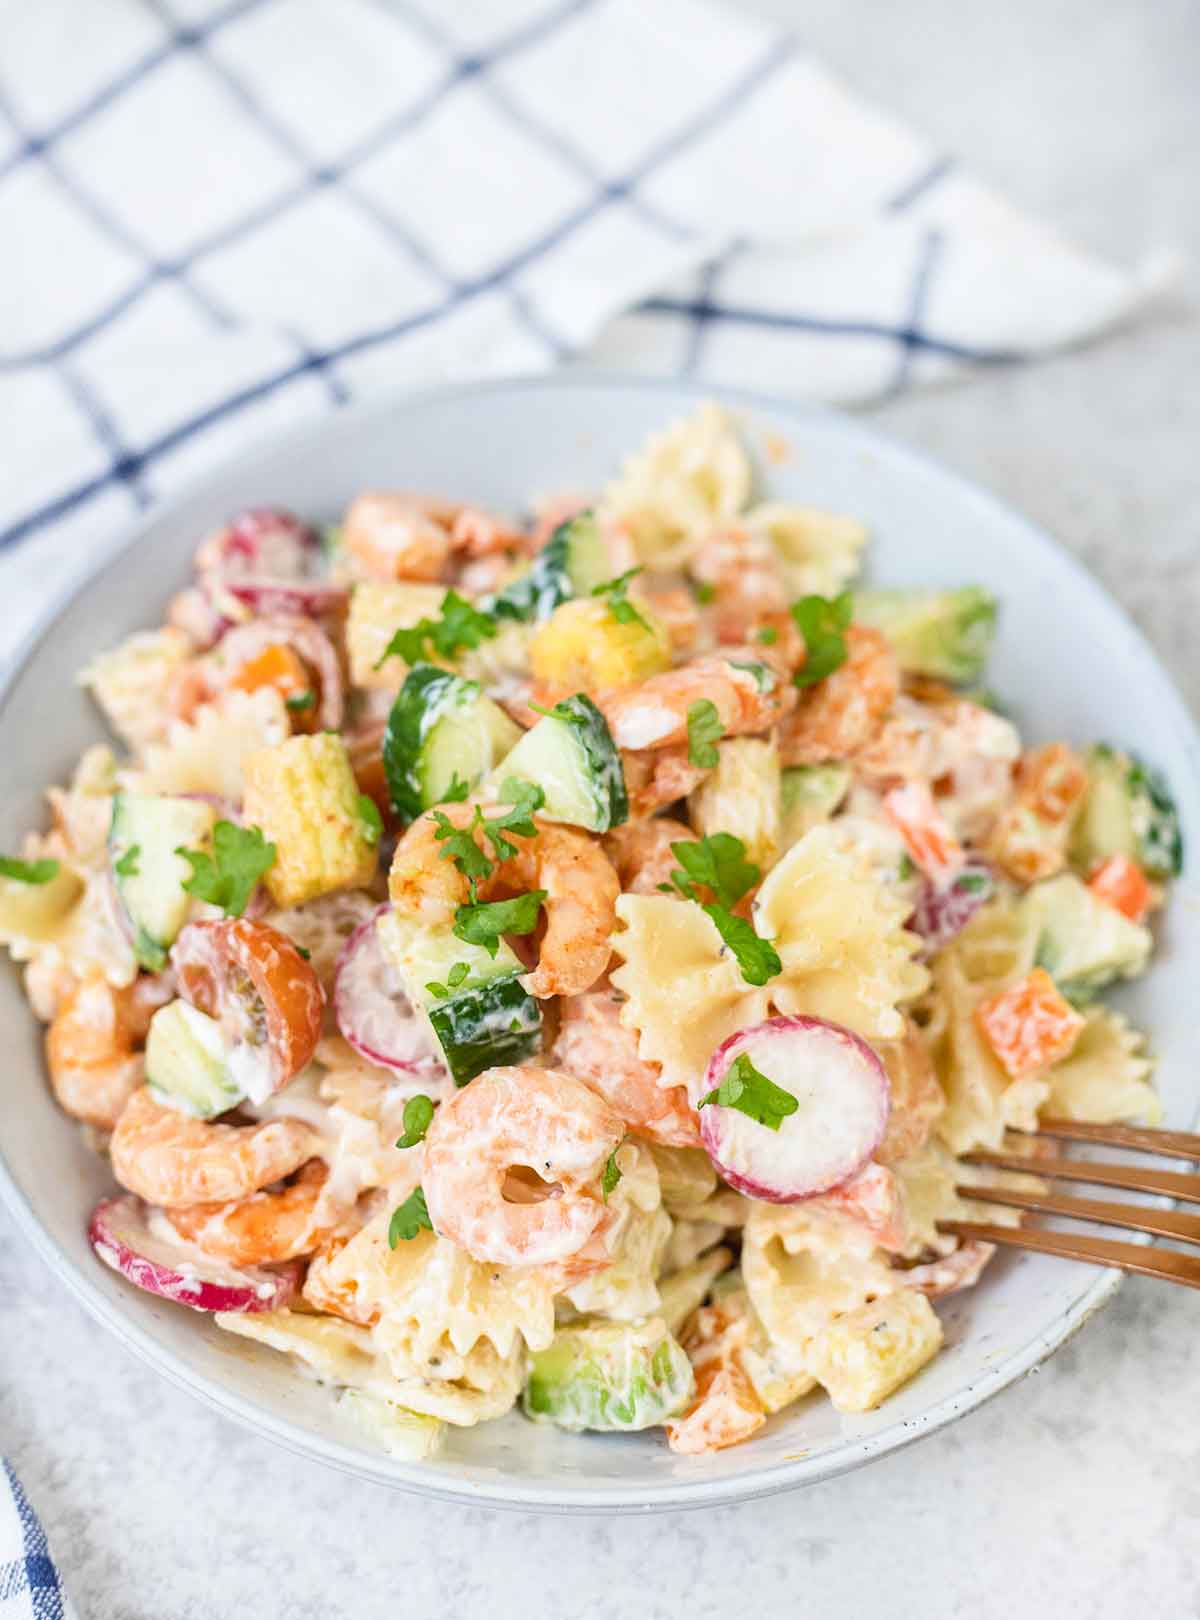 Italian shrimp pasta salad mixed with a homemade creamy dressing.